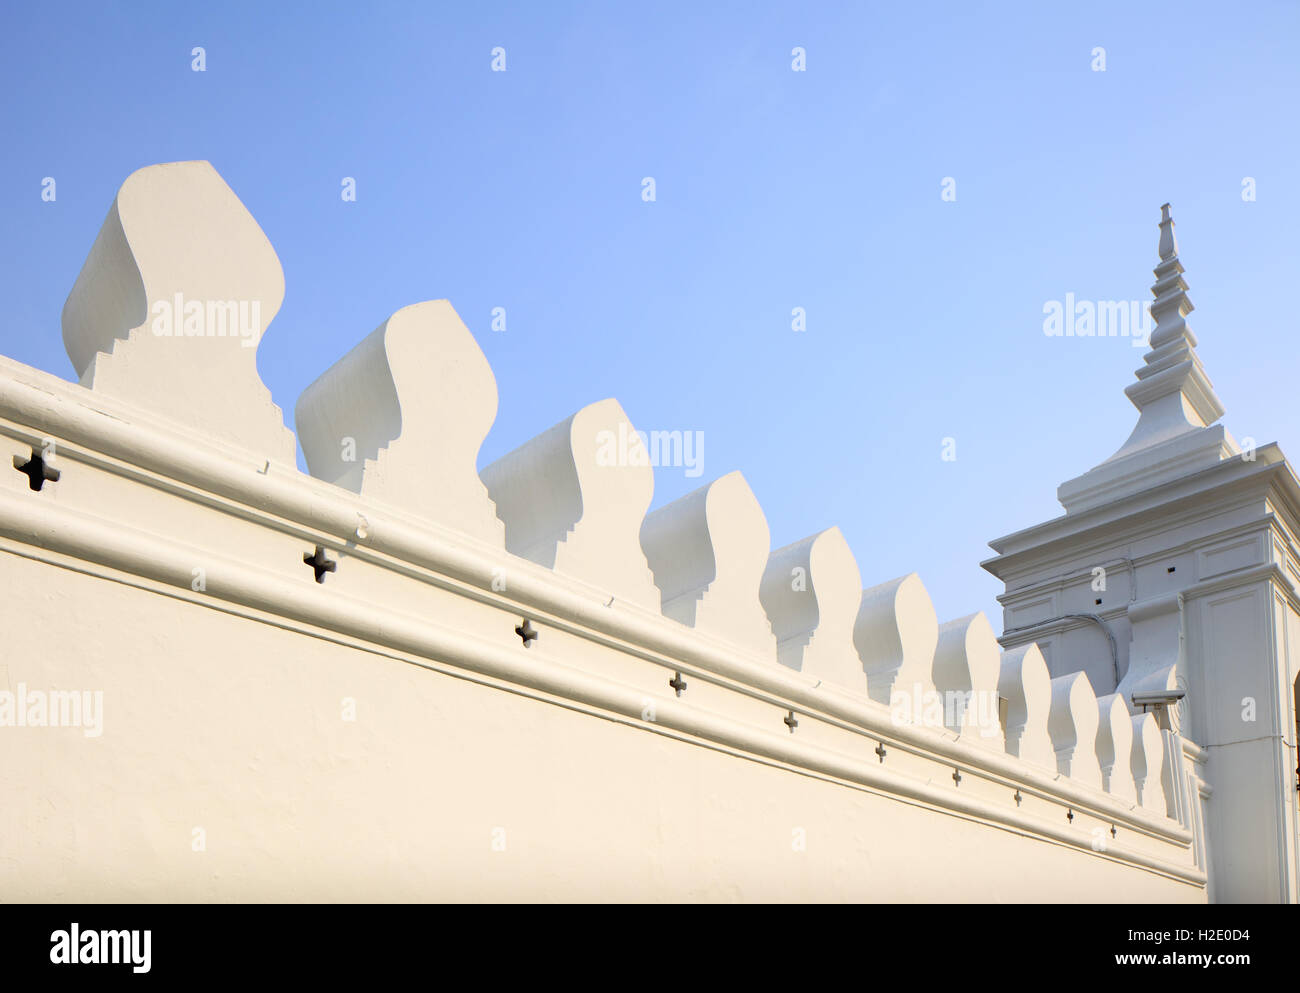 White wall with thai design Stock Photo